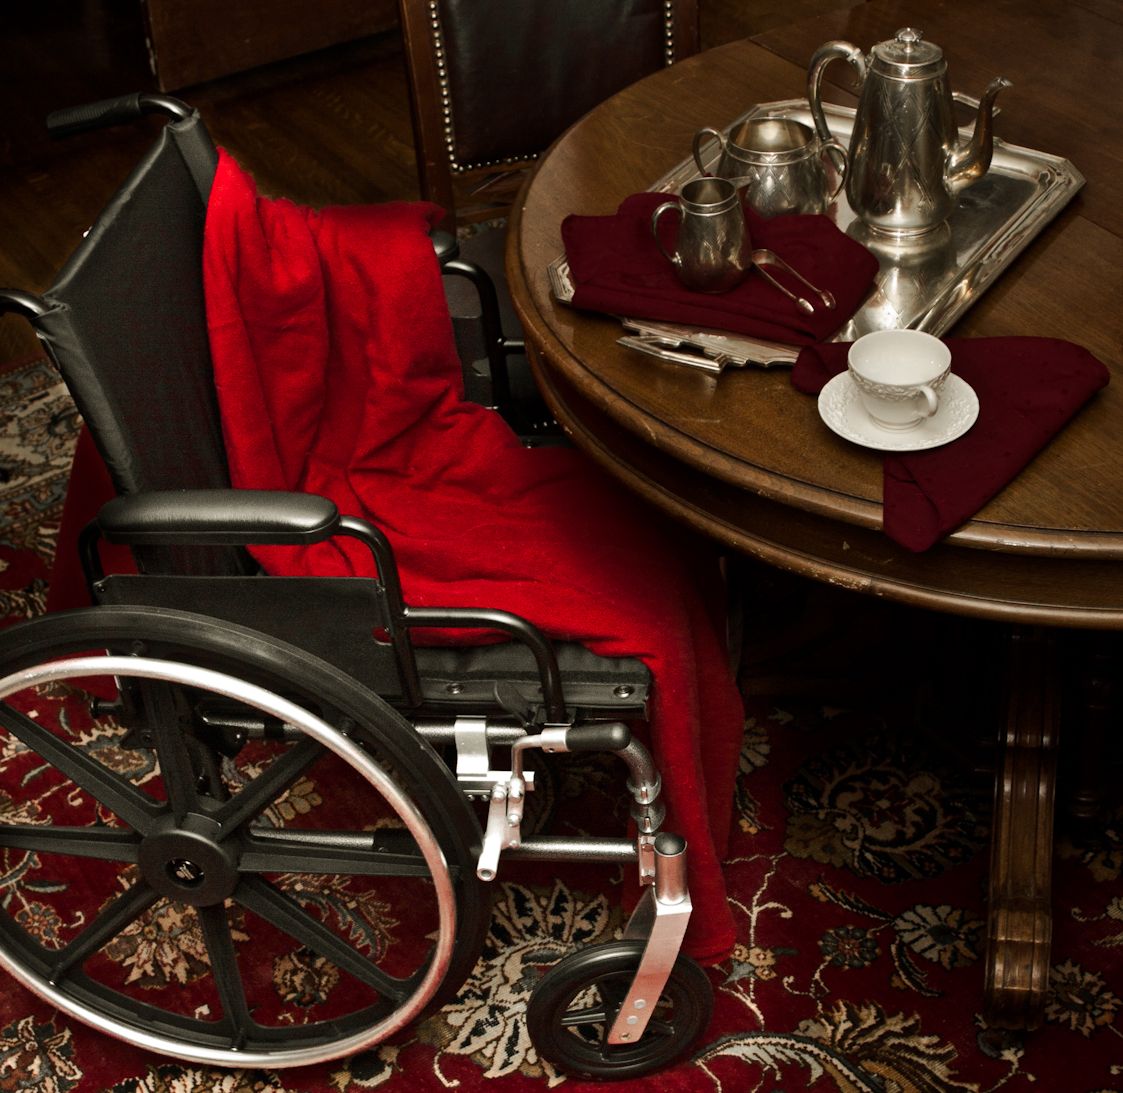 2013-01-06-wheelchair.jpg